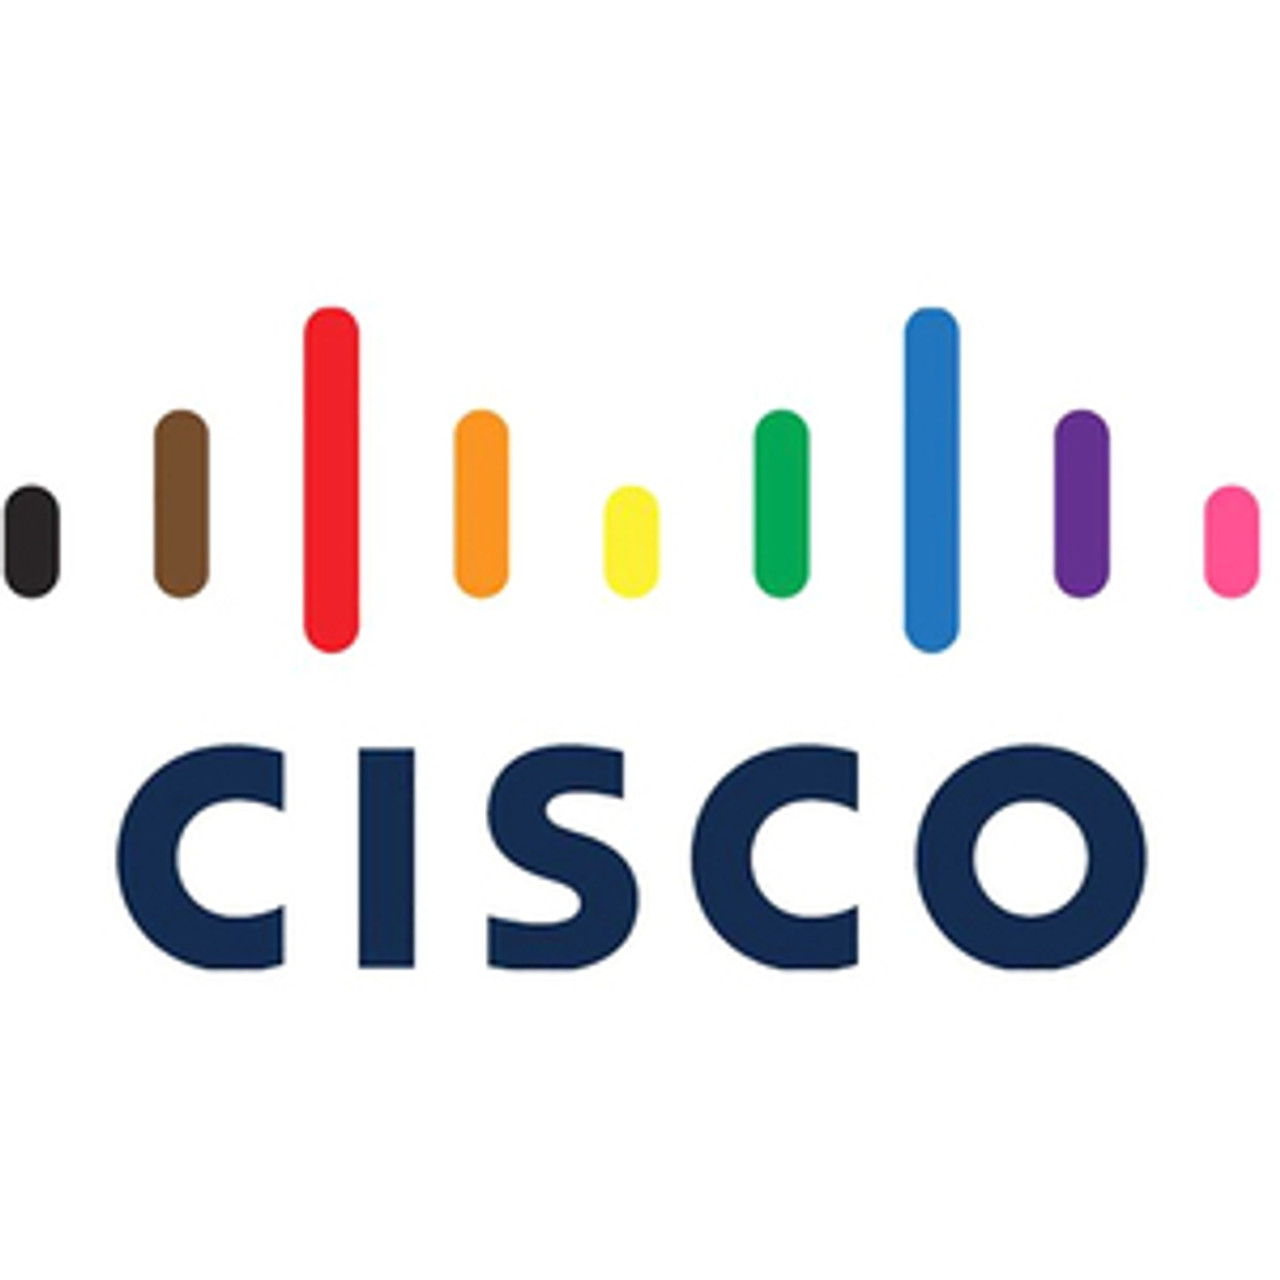 Cisco 7.70 TB Solid State Drive - 2.5" Internal - U.2 (SFF-8639) NVMe